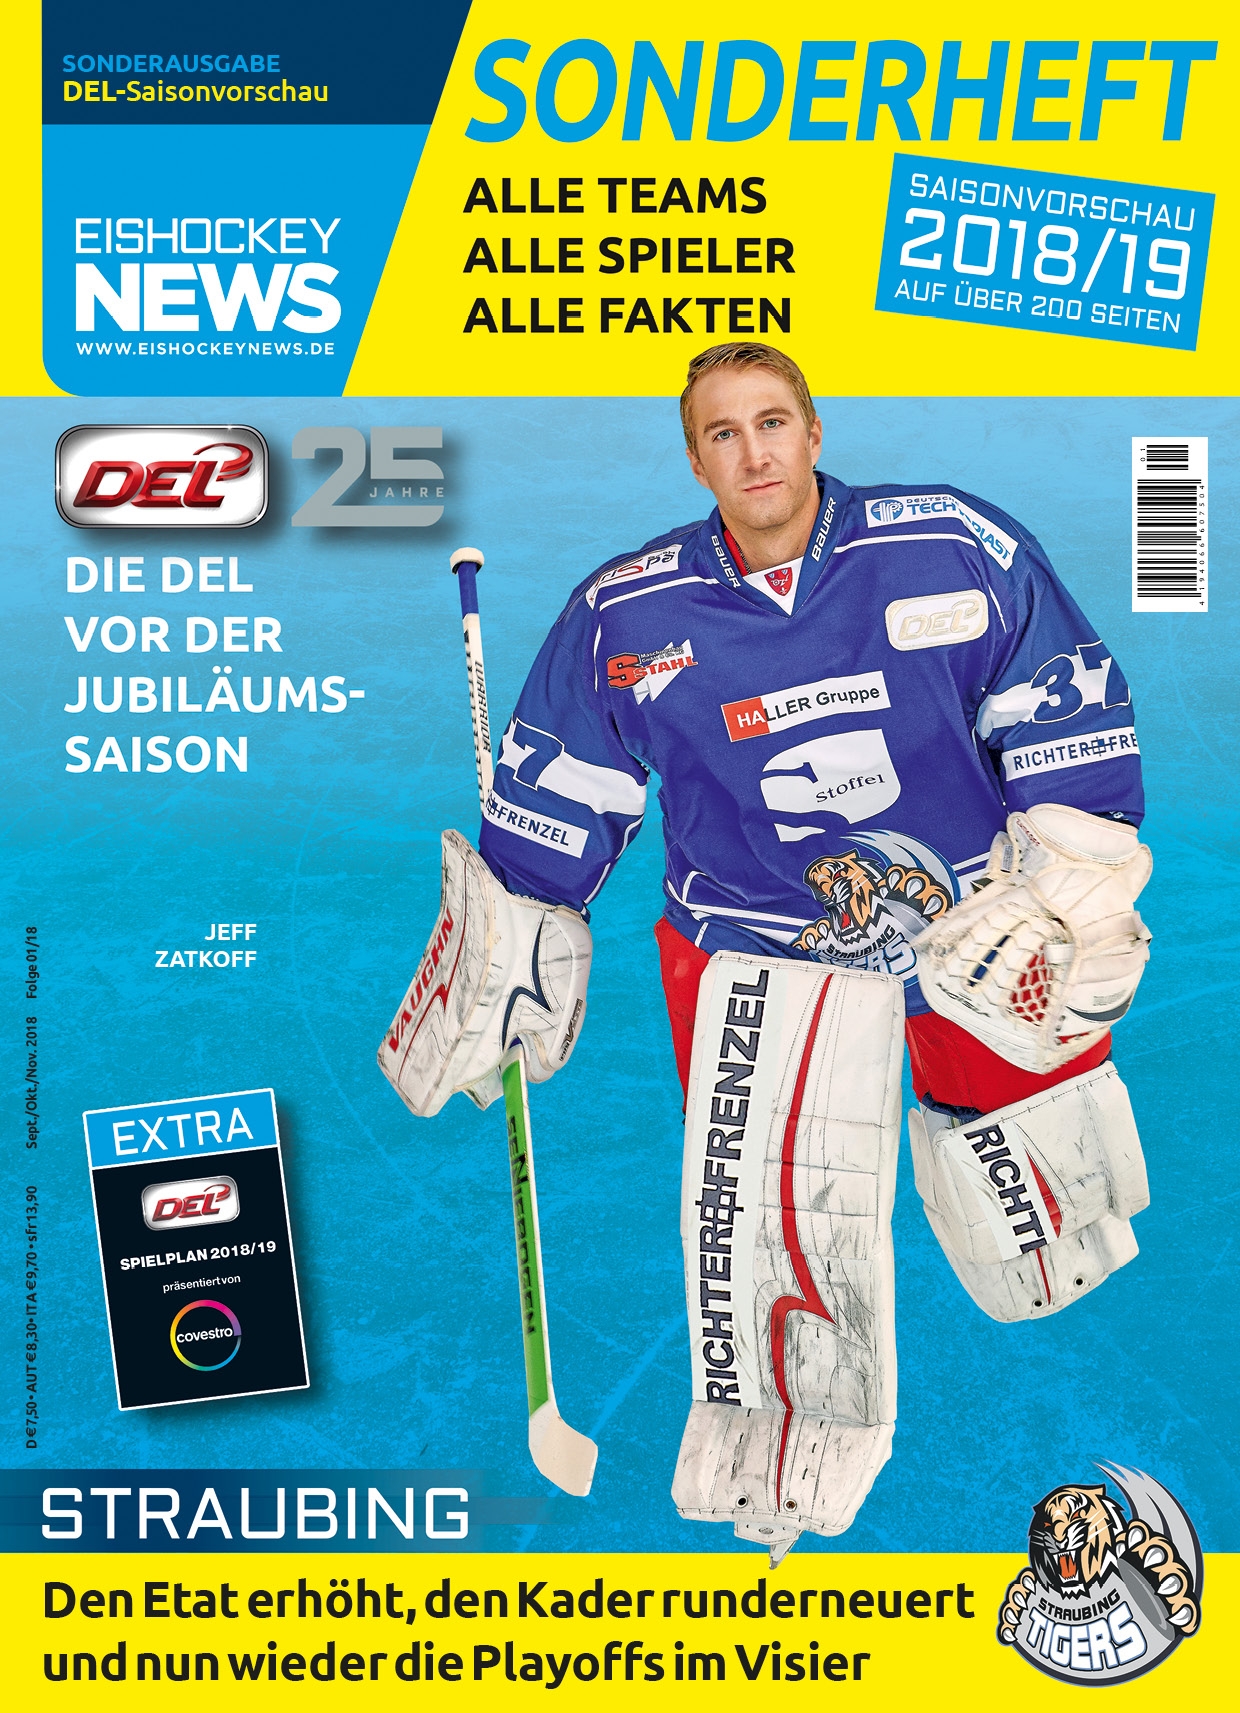 DEL Sonderheft 2018/19 mit Straubing-Cover inkl. Mini-Spielplan